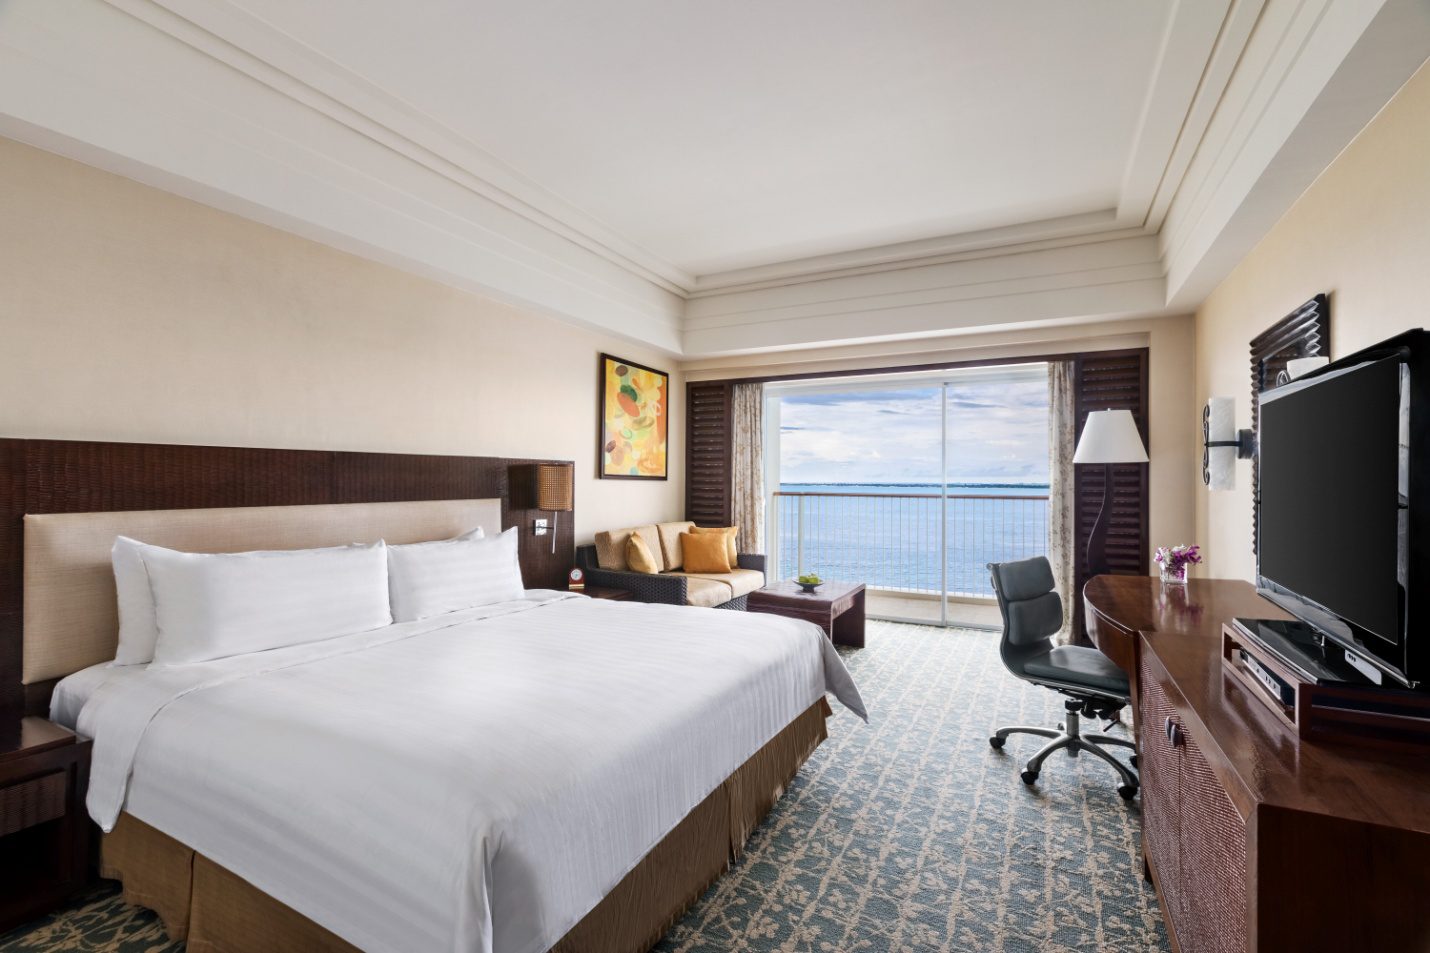 C:\Users\GCPI-ROBBY\Desktop\PRS\SHANGRILA\Shangri-La's Mactan Resort and Spa, Cebu - Panorama Room King - 1350673.jpg